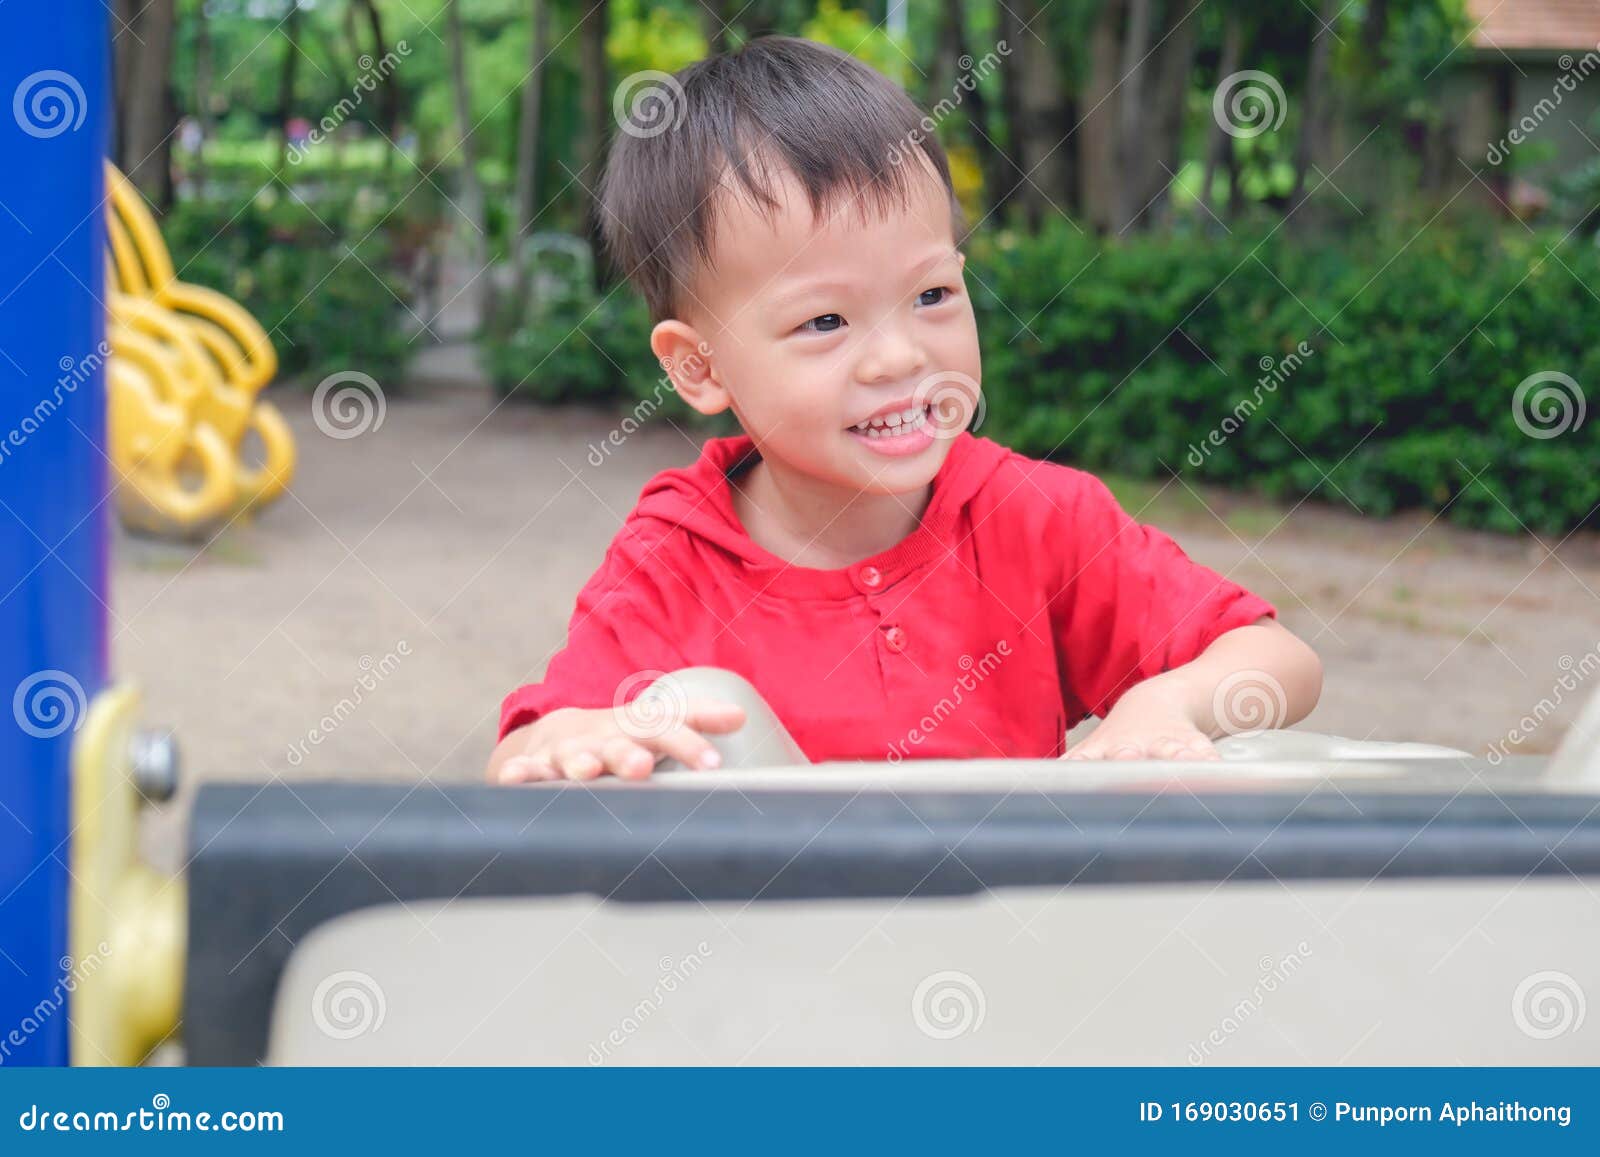 Mignon Petit Enfant Asiatique De 2 à 3 Ans Enfant Garçon S'amusant